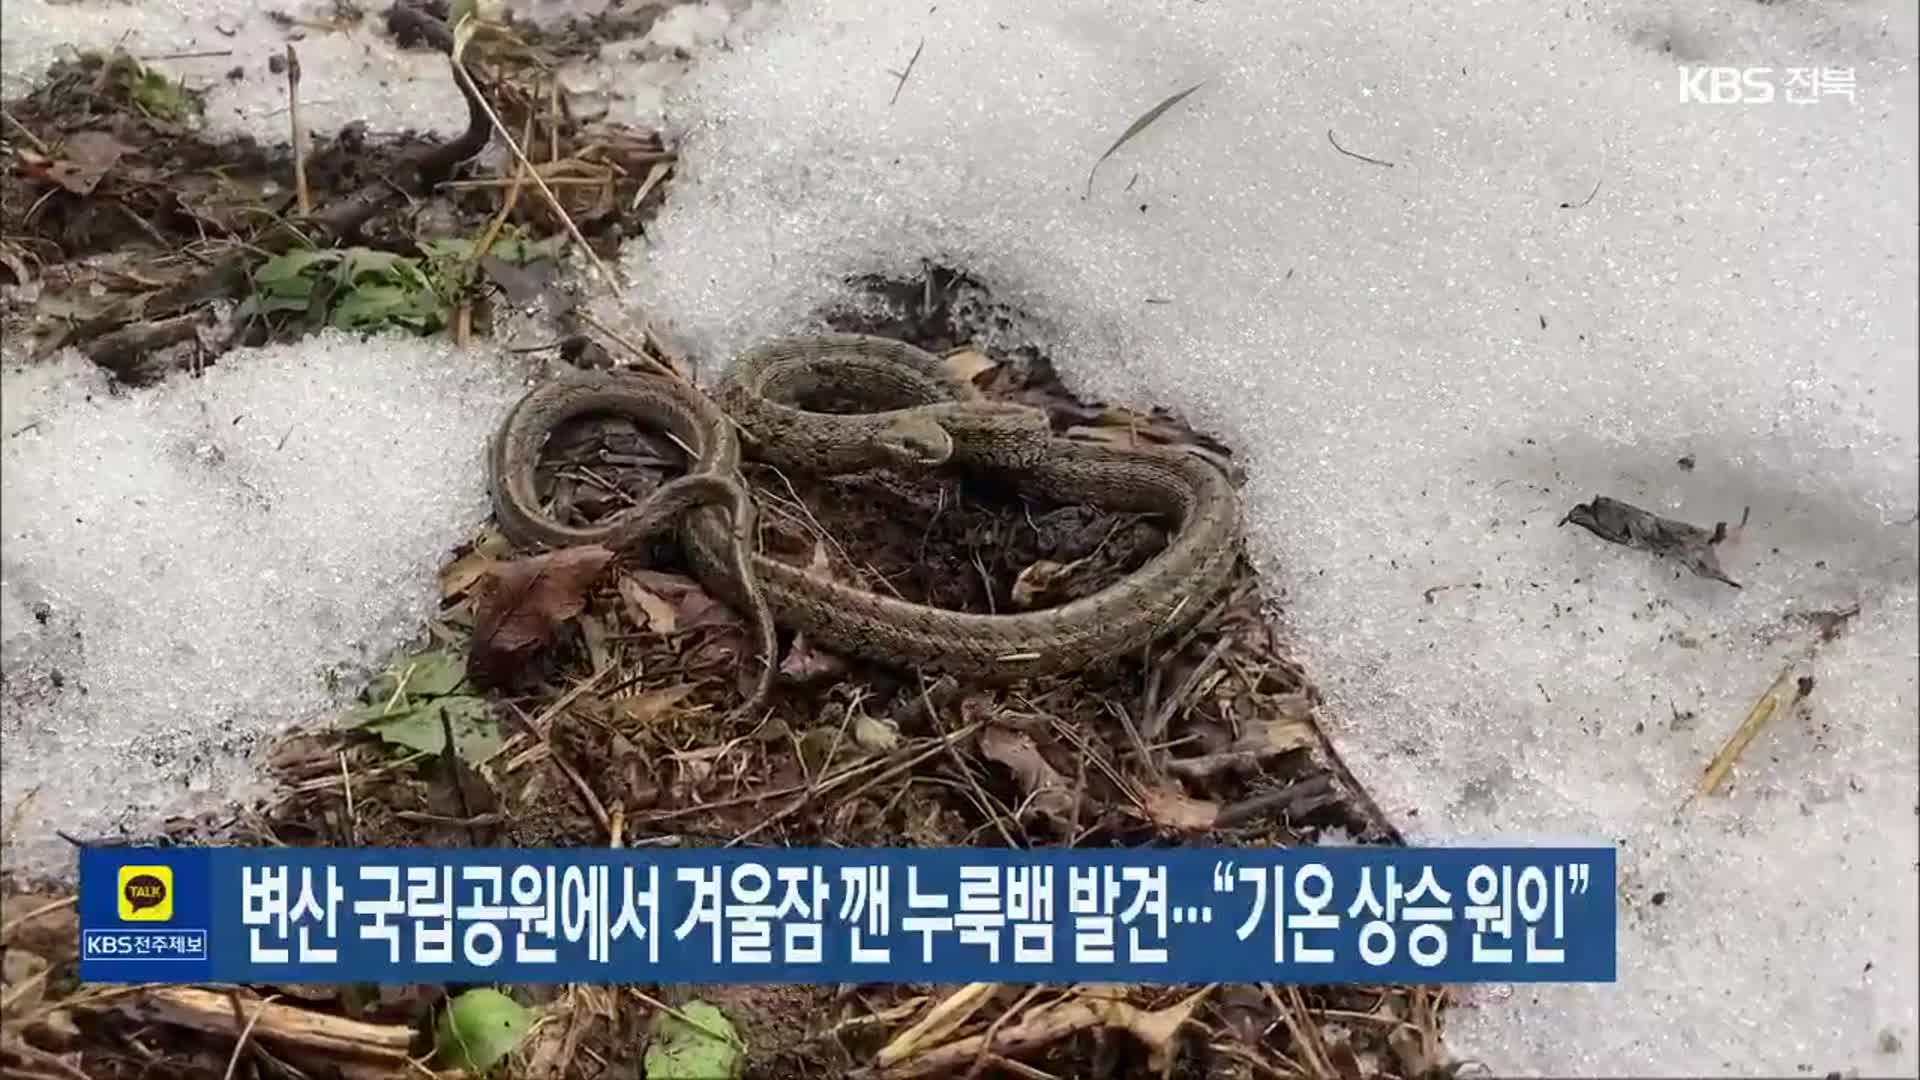 변산 국립공원에서 겨울잠 깬 누룩뱀 발견…“기온 상승 원인”